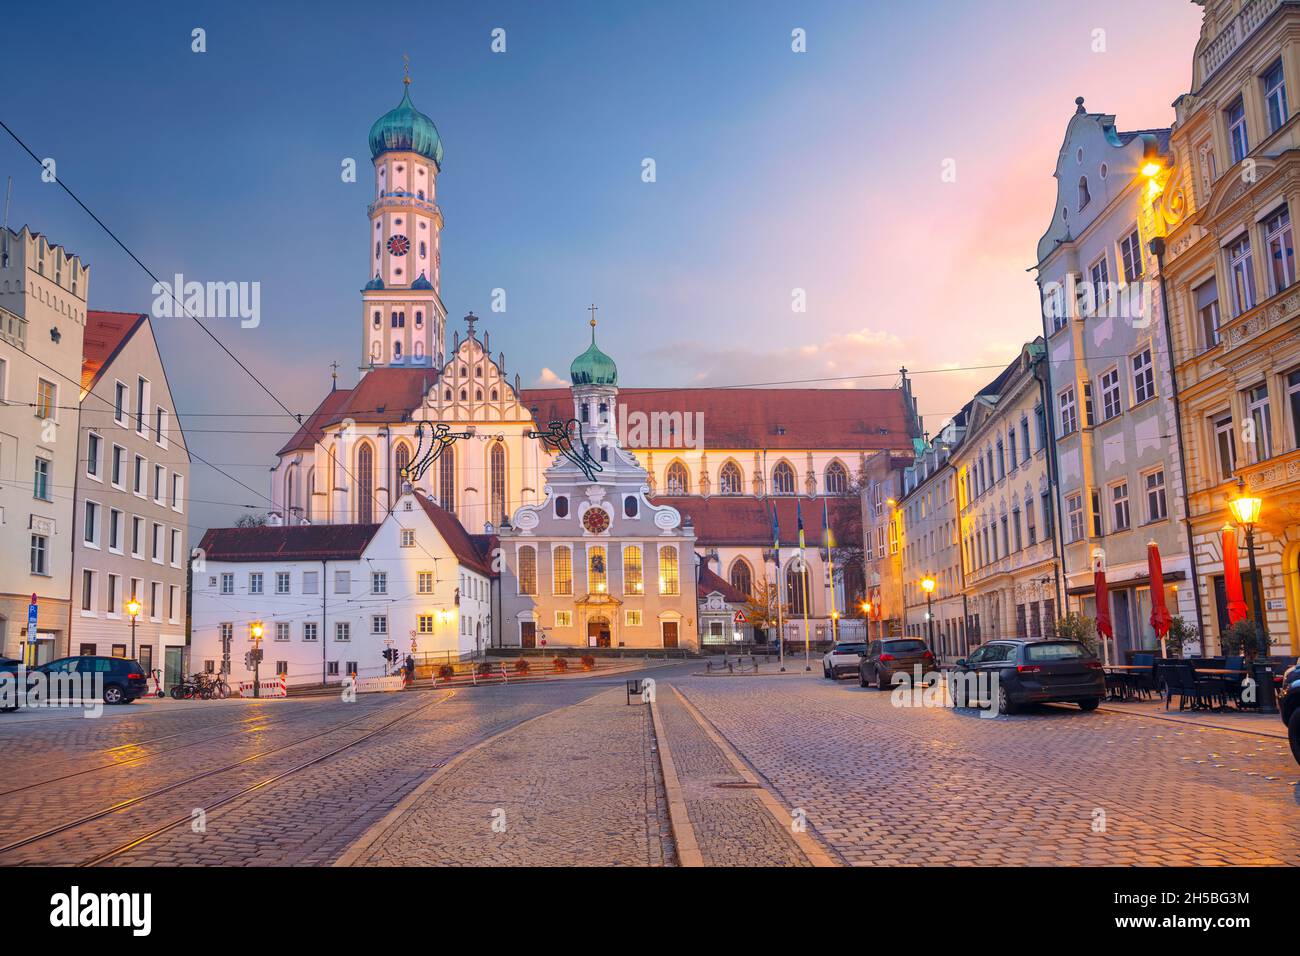 Augusta, Germania. Immagine del paesaggio urbano della strada della città vecchia di Augusta, Germania, con la Basilica di San Ulrich e Afra al tramonto d'autunno. Foto Stock